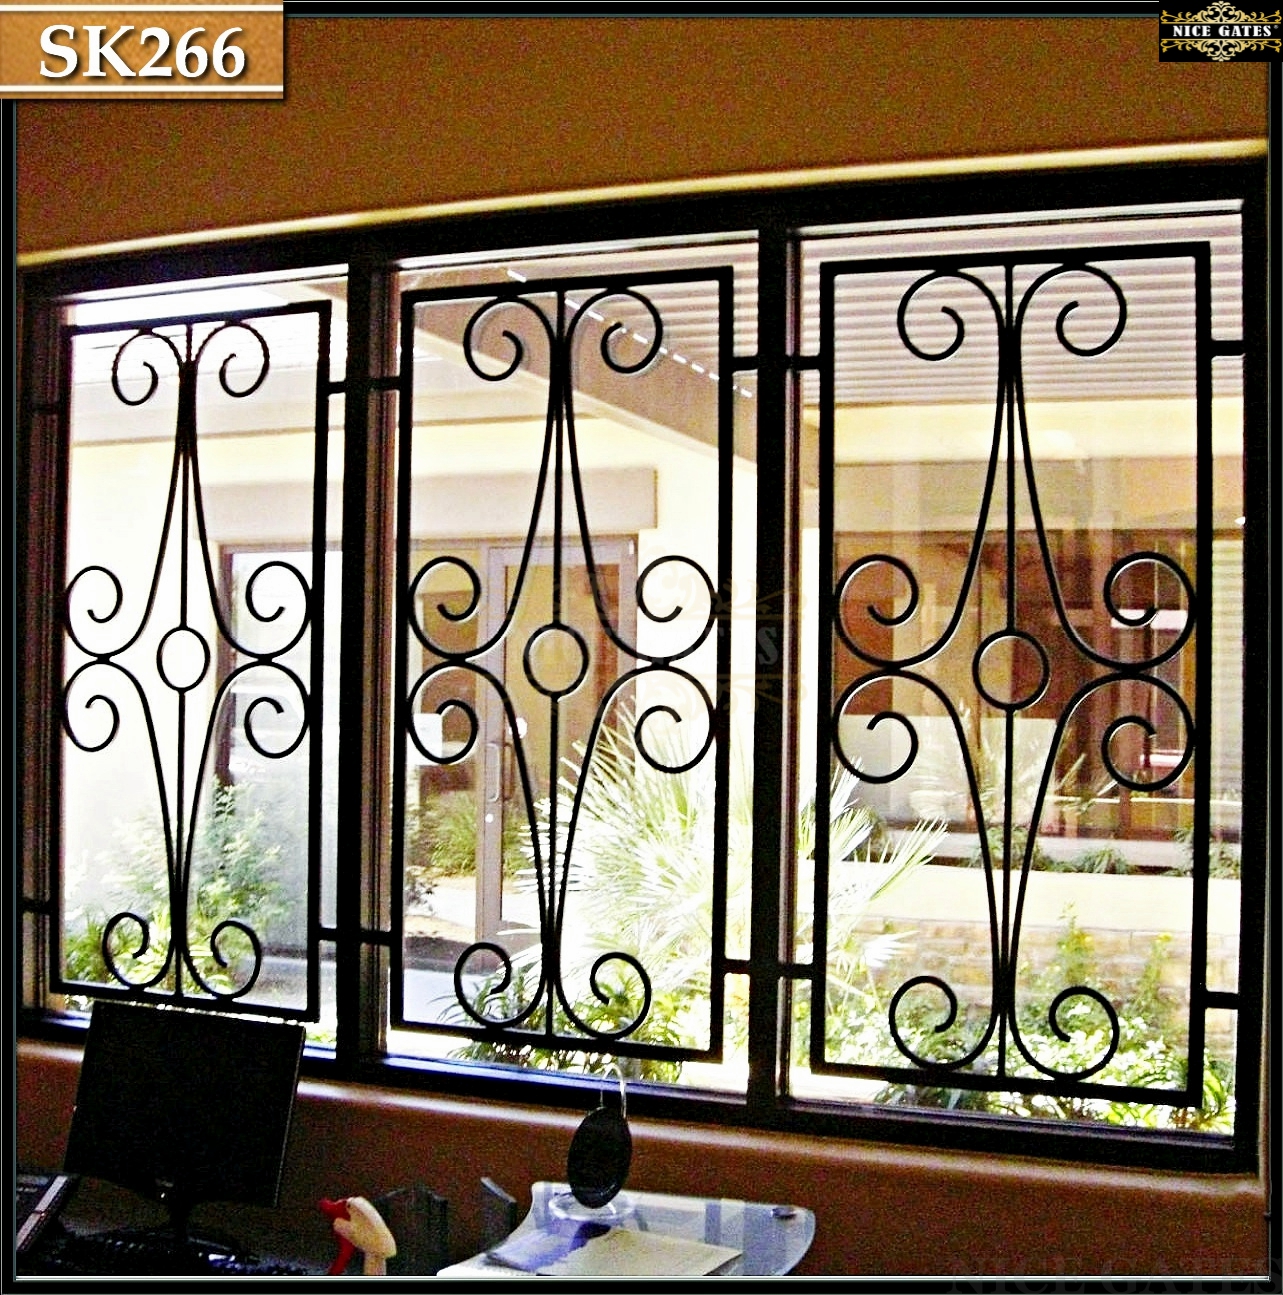 Khung cửa sổ đơn giản thanh thoát- SK266